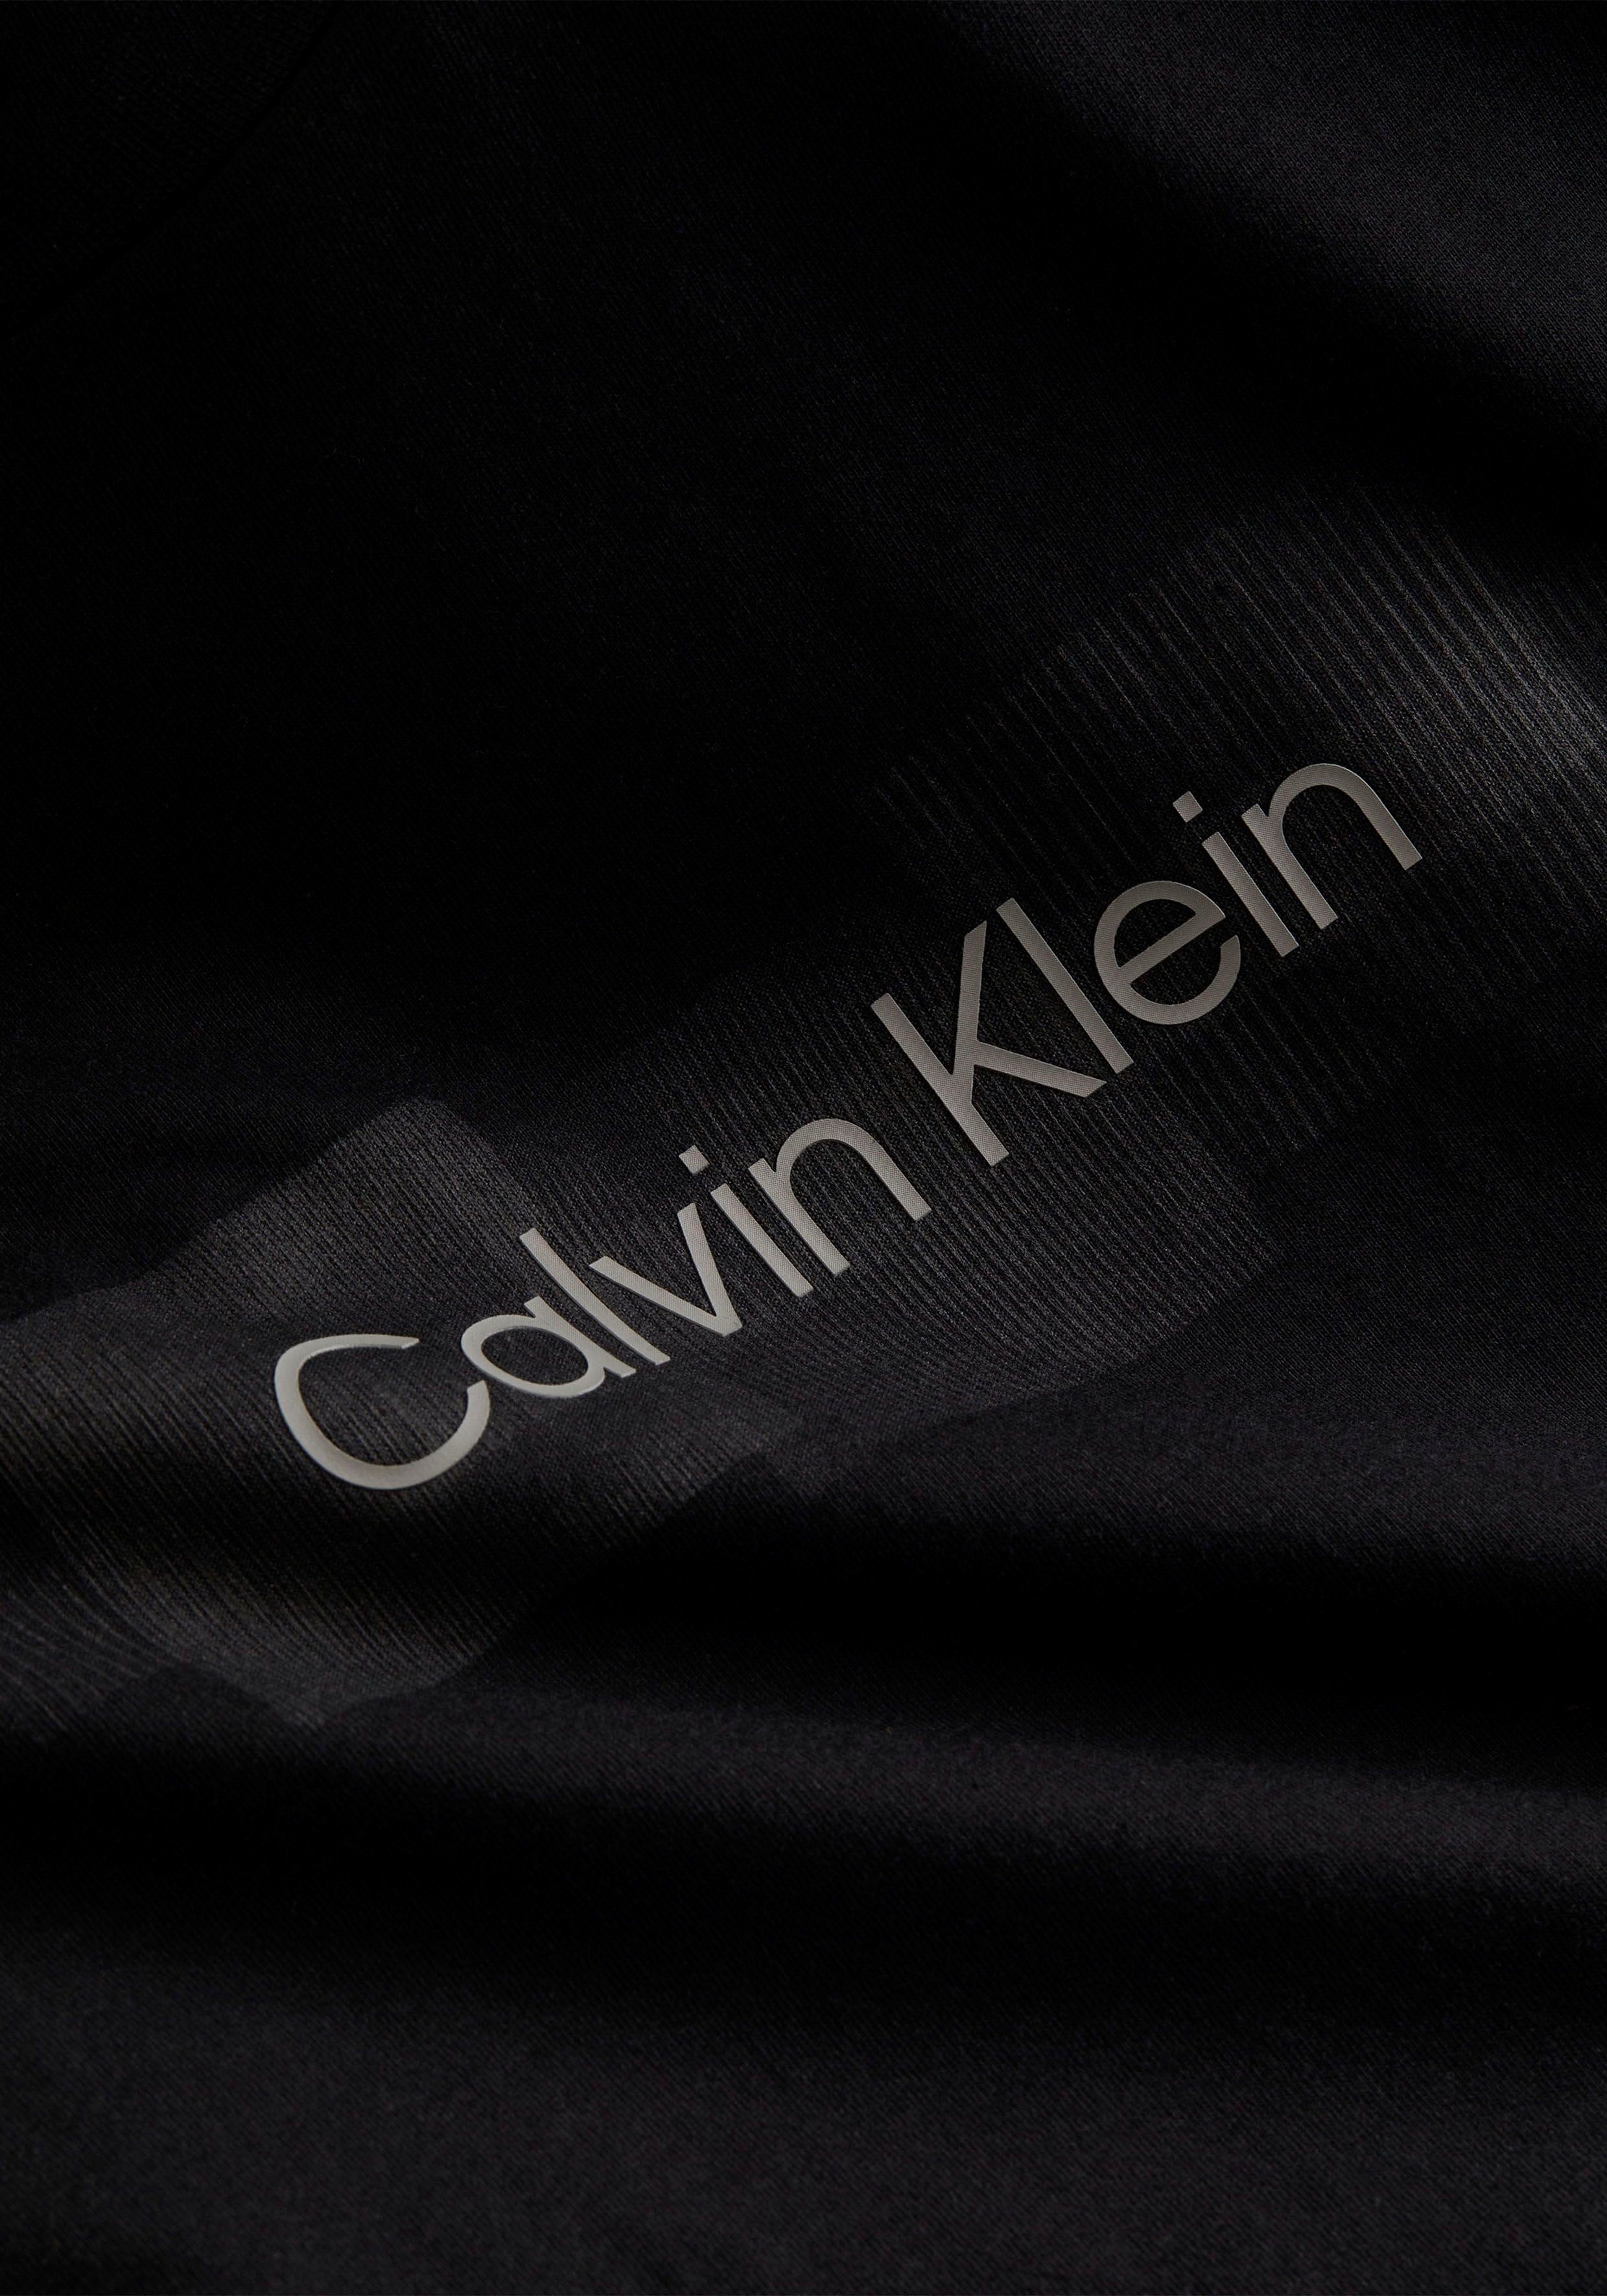 Ck BOX T-SHIRT LOGO Black der mit Vorderseite Logoprint auf Klein LS Longsleeve STRIPED Calvin